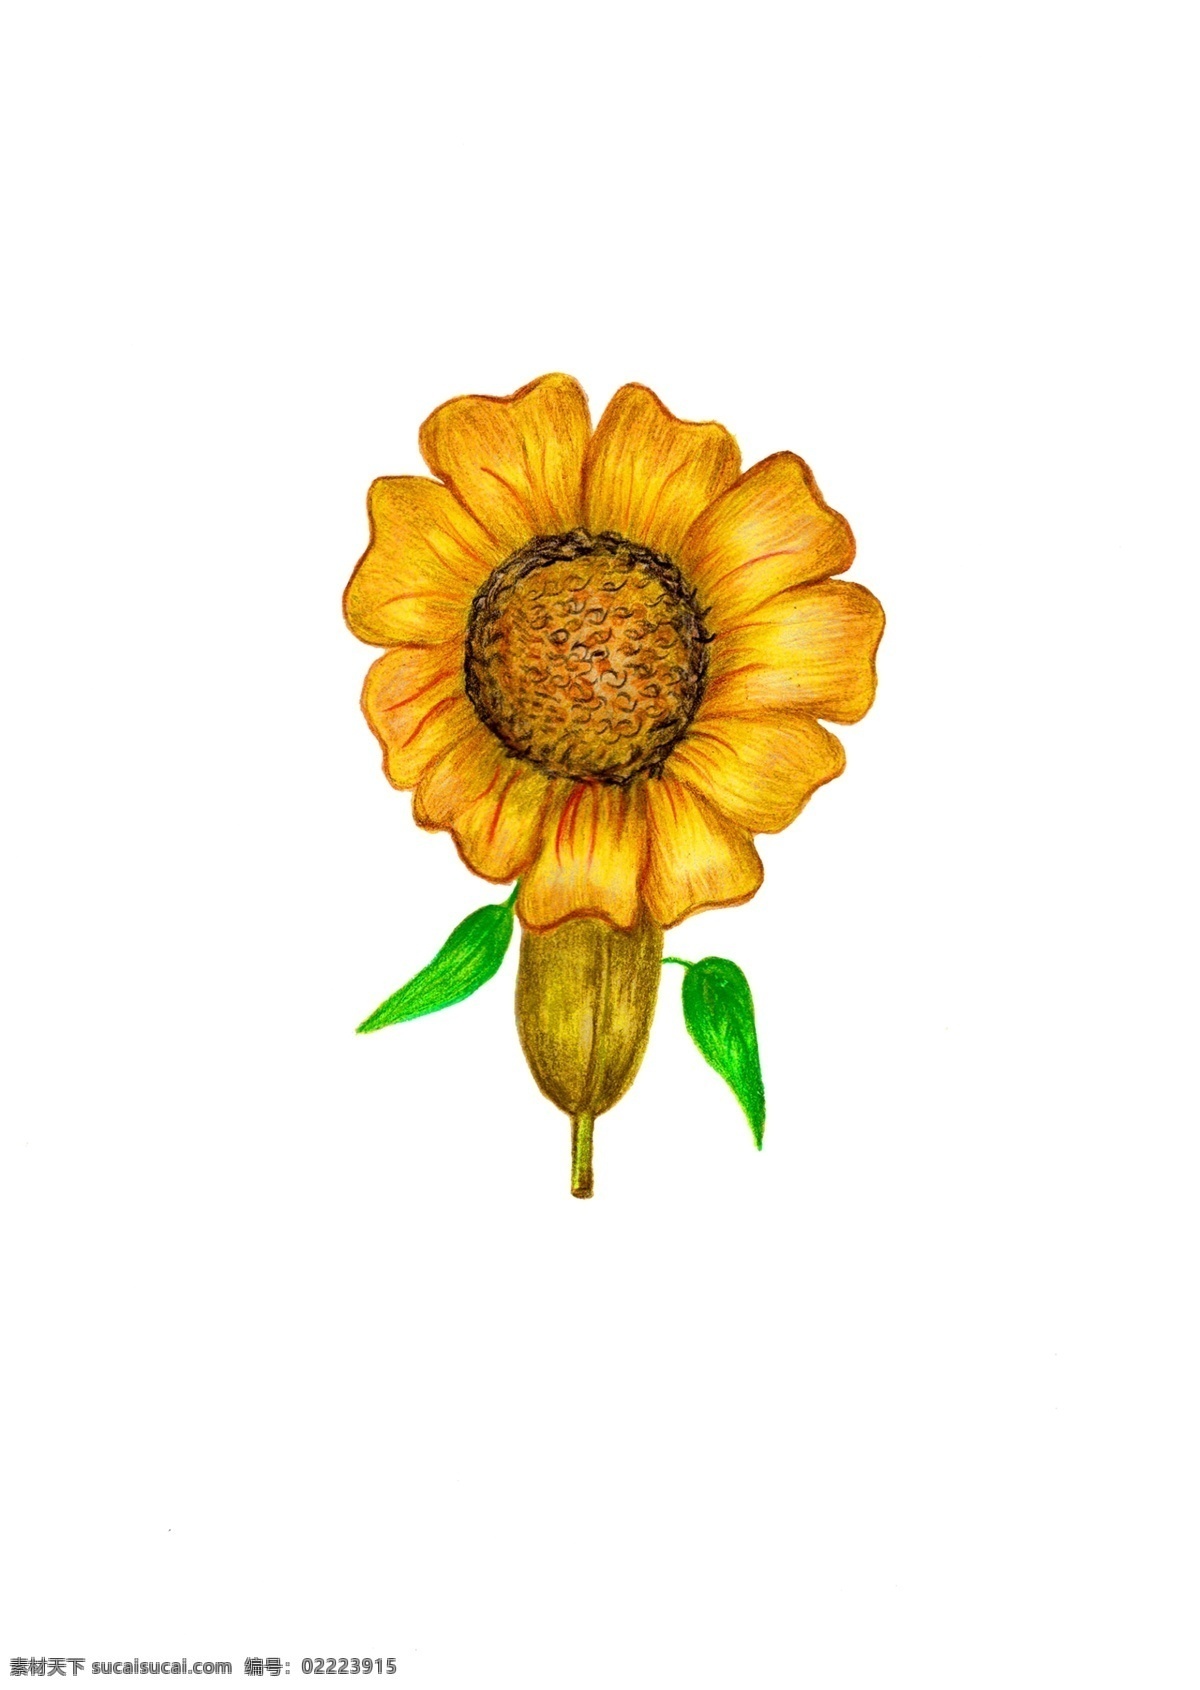 爱的花朵 绽放的情 节日 手绘 爱情 卡通 烂漫 广告 花朵 图标 情人节 金黄色的 向日葵 促销 产品实物 装饰图案